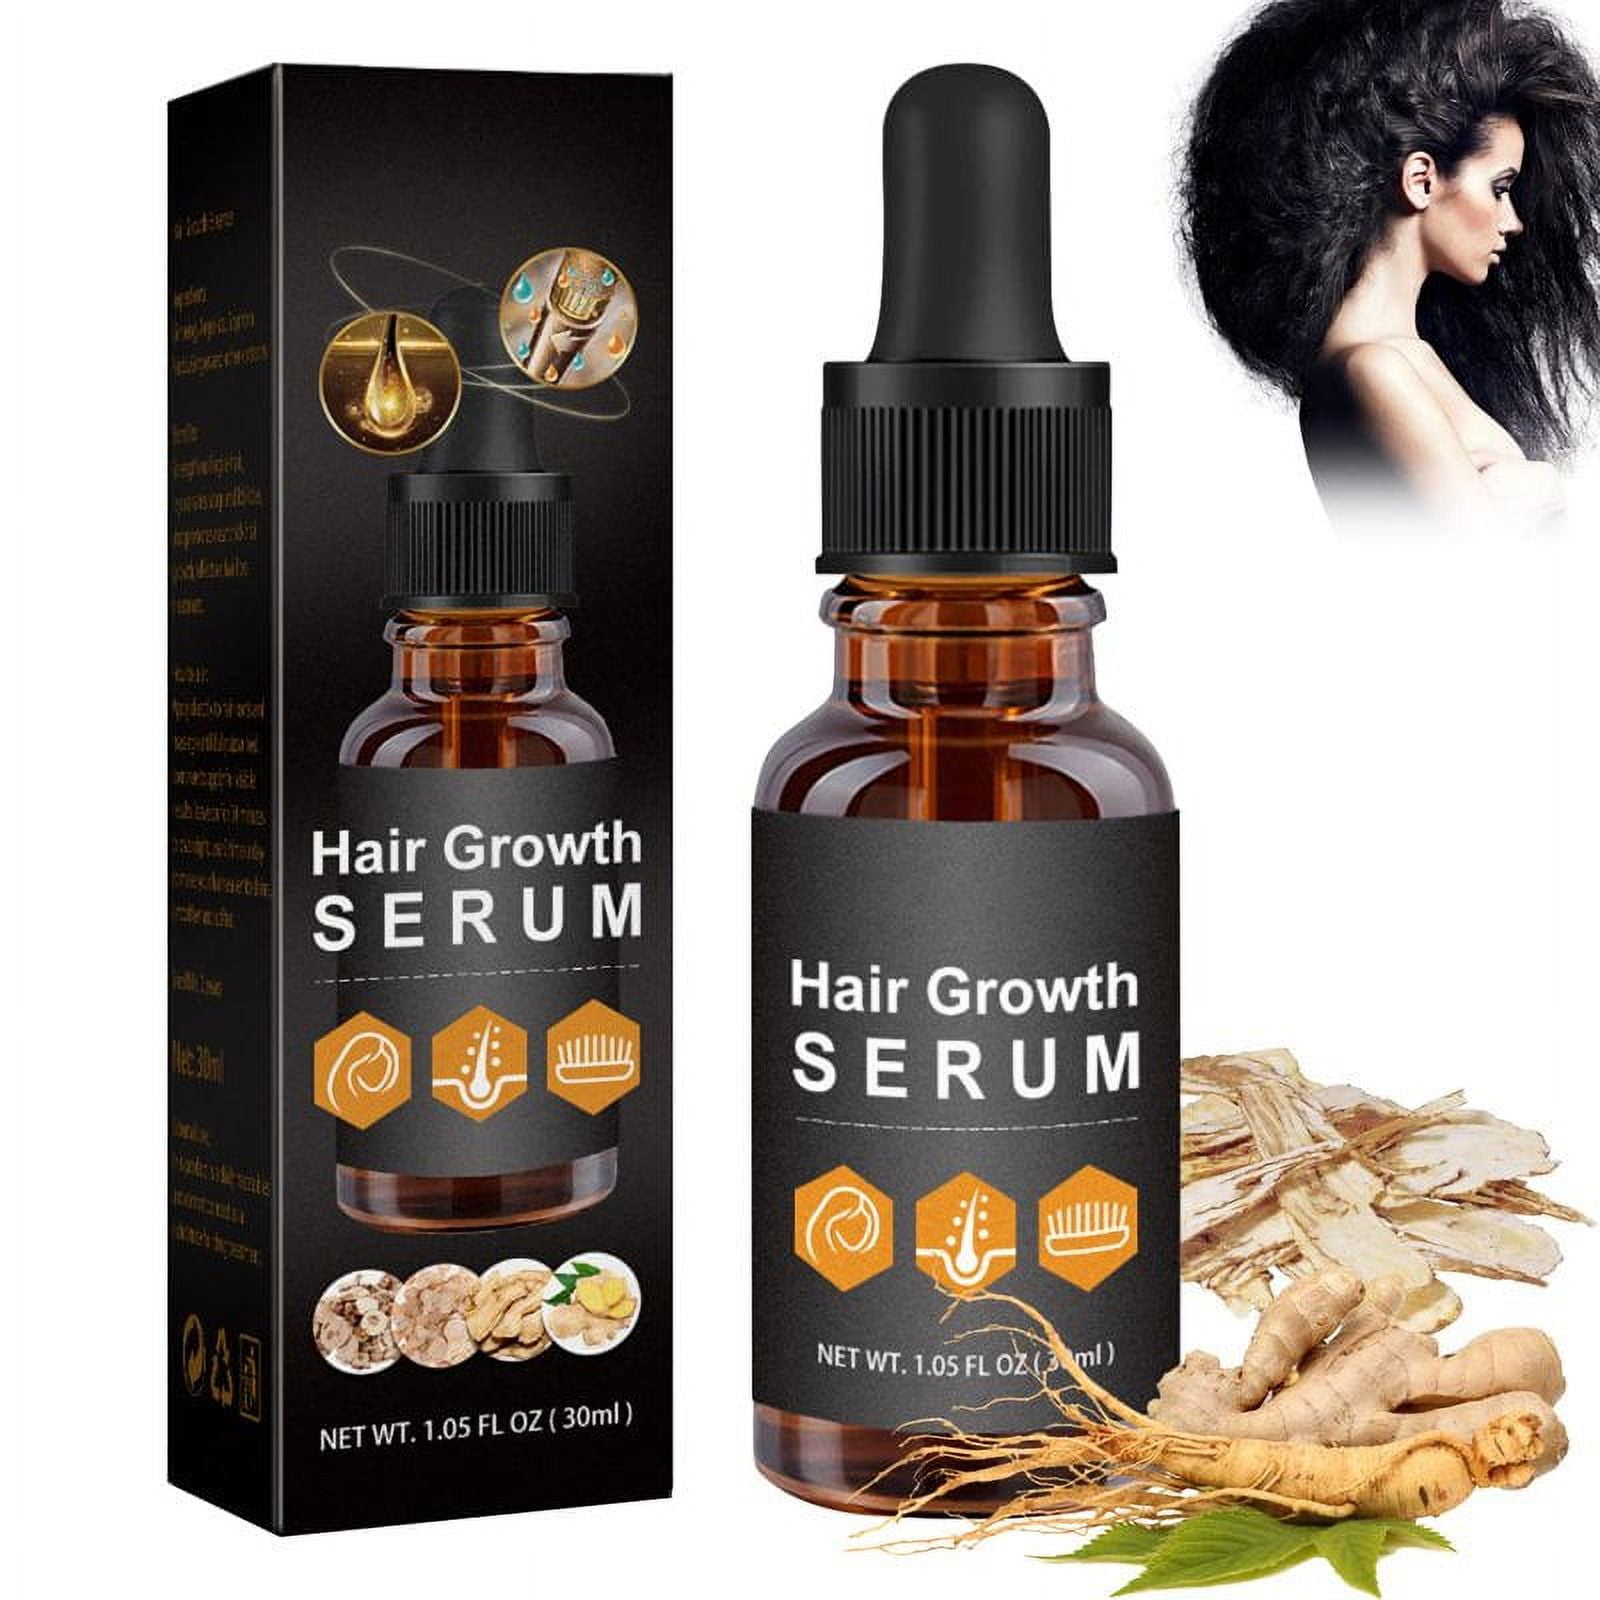 Jfy Hair Growth Serum for Black Women, Hair Growth Serum, Beauty Hair Growth Serum, Anti Hair Loss Nourish Dry Damaged Hair Repair, Fast Hair Growth